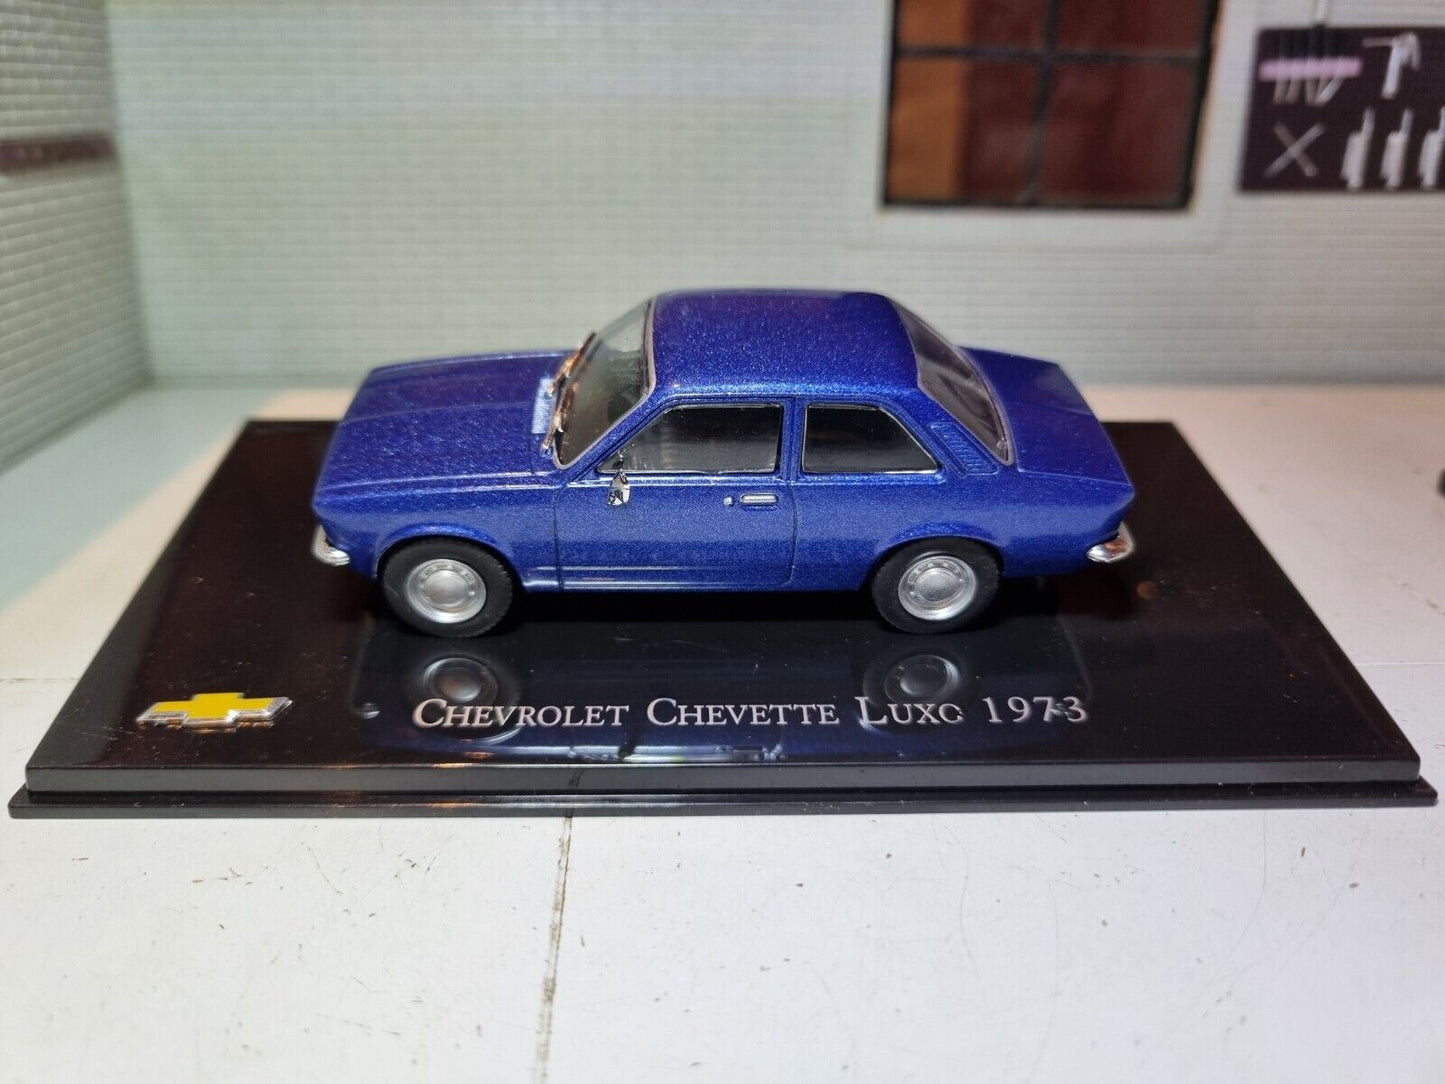 Chevrolet 1973 Chevette Luxo 1:43